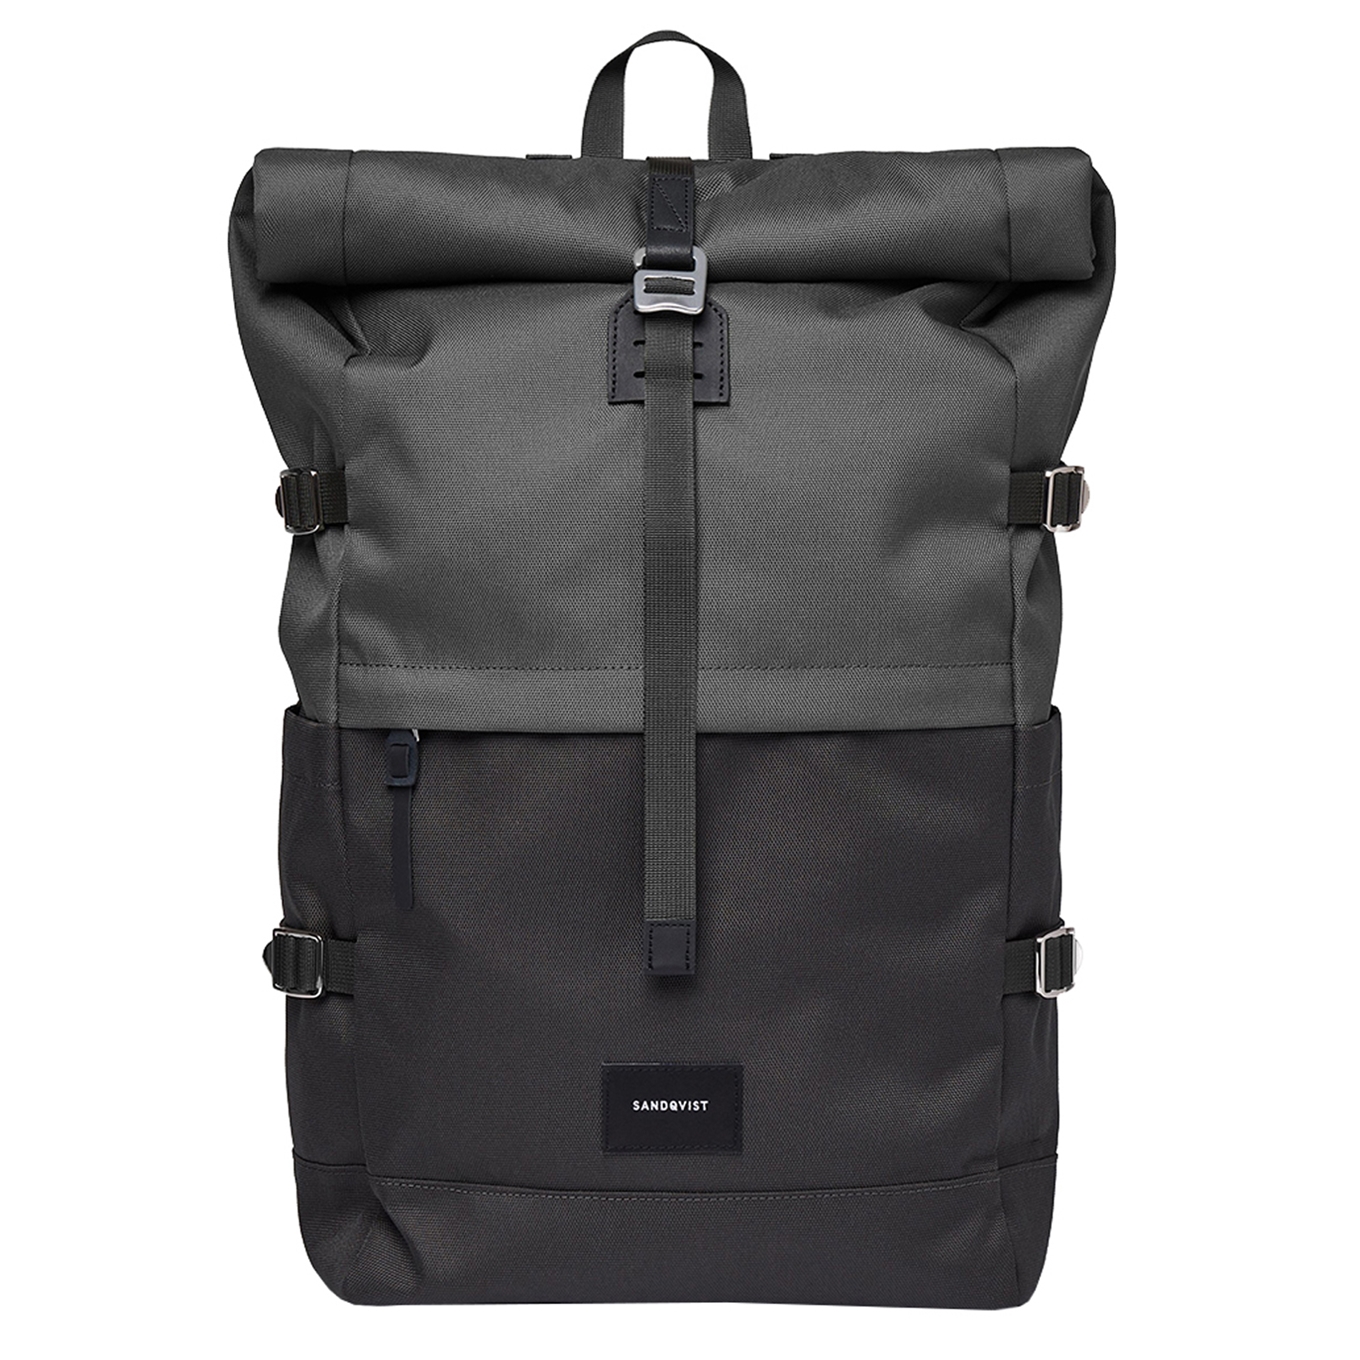 Sandqvist Bernt Backpack multi dark backpack